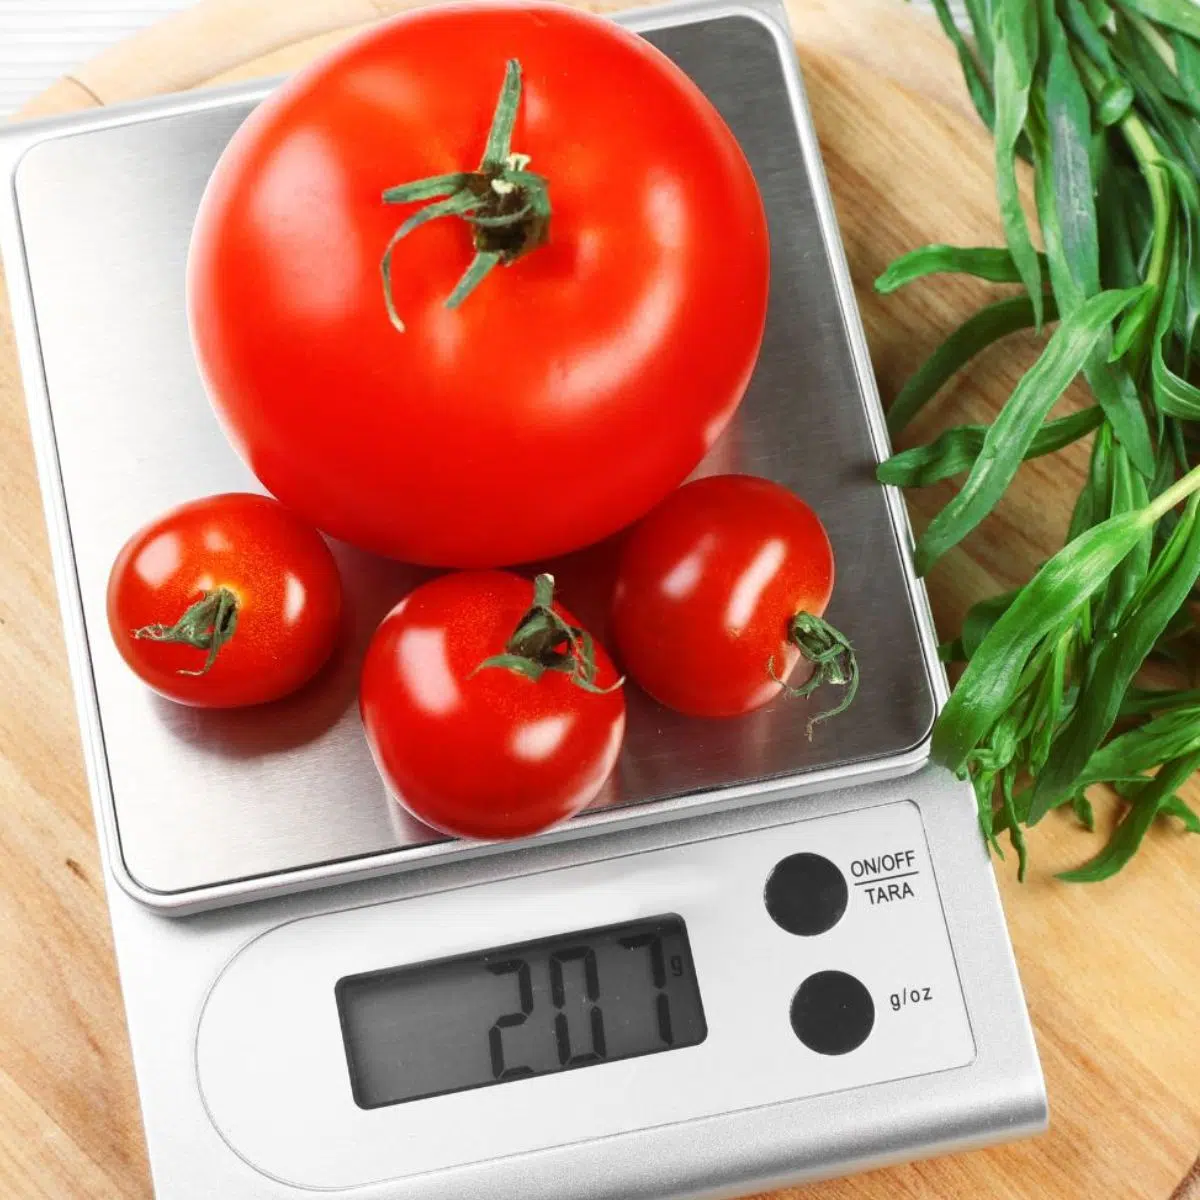 Konversi gram dalam satu pon untuk memasak dan memanggang diilustrasikan dengan timbangan dapur dan tomat segar ditimbang dalam gram.